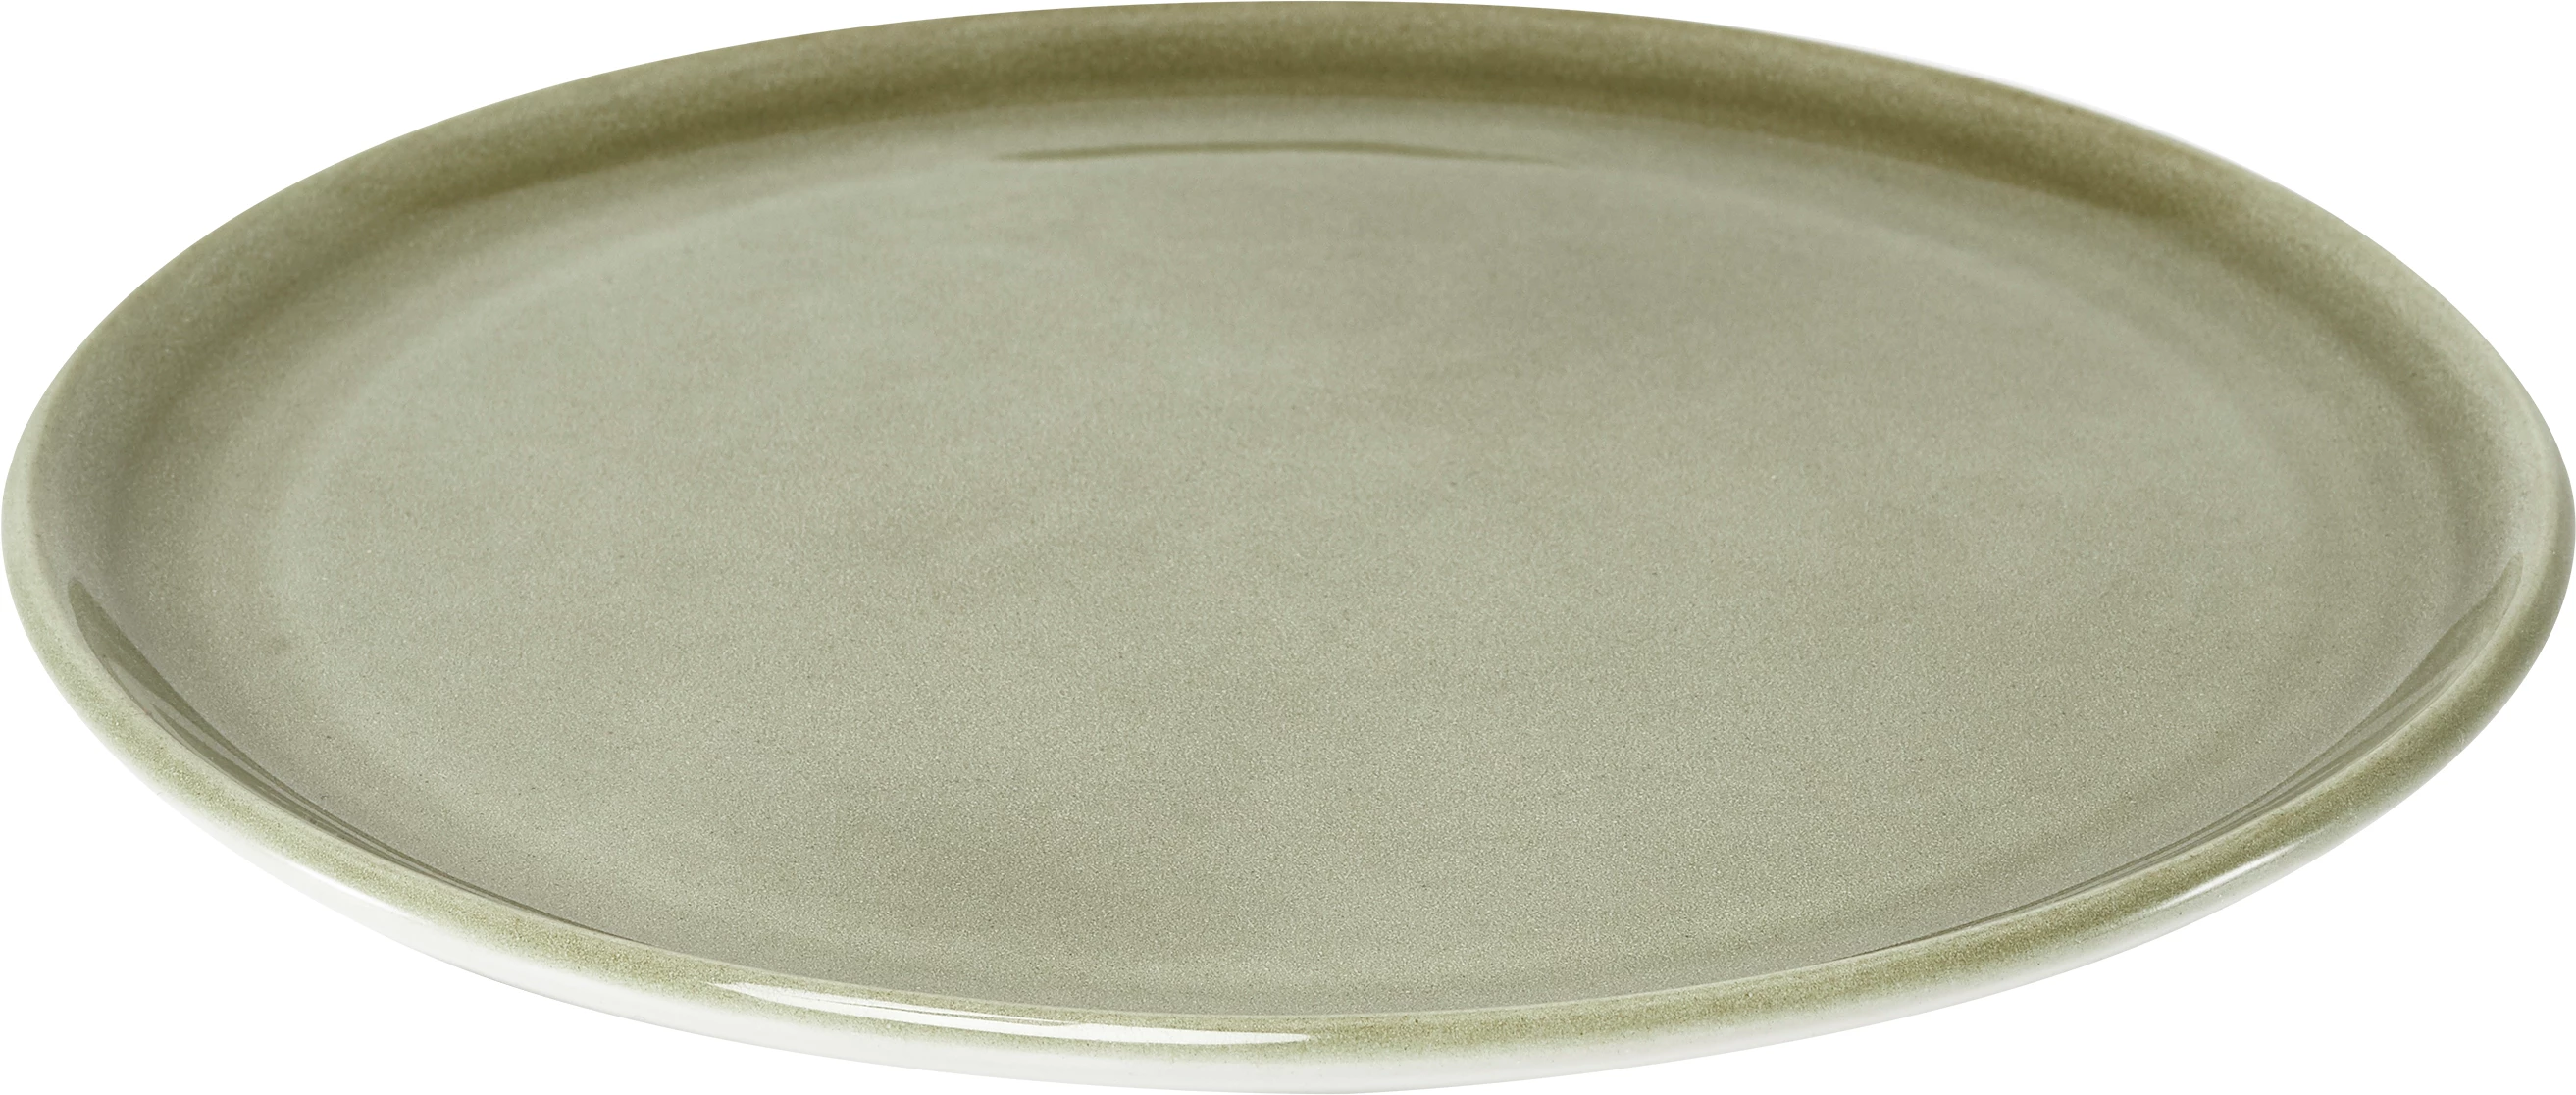 Figgjo Pax flad tallerken, oliven, ø24 cm